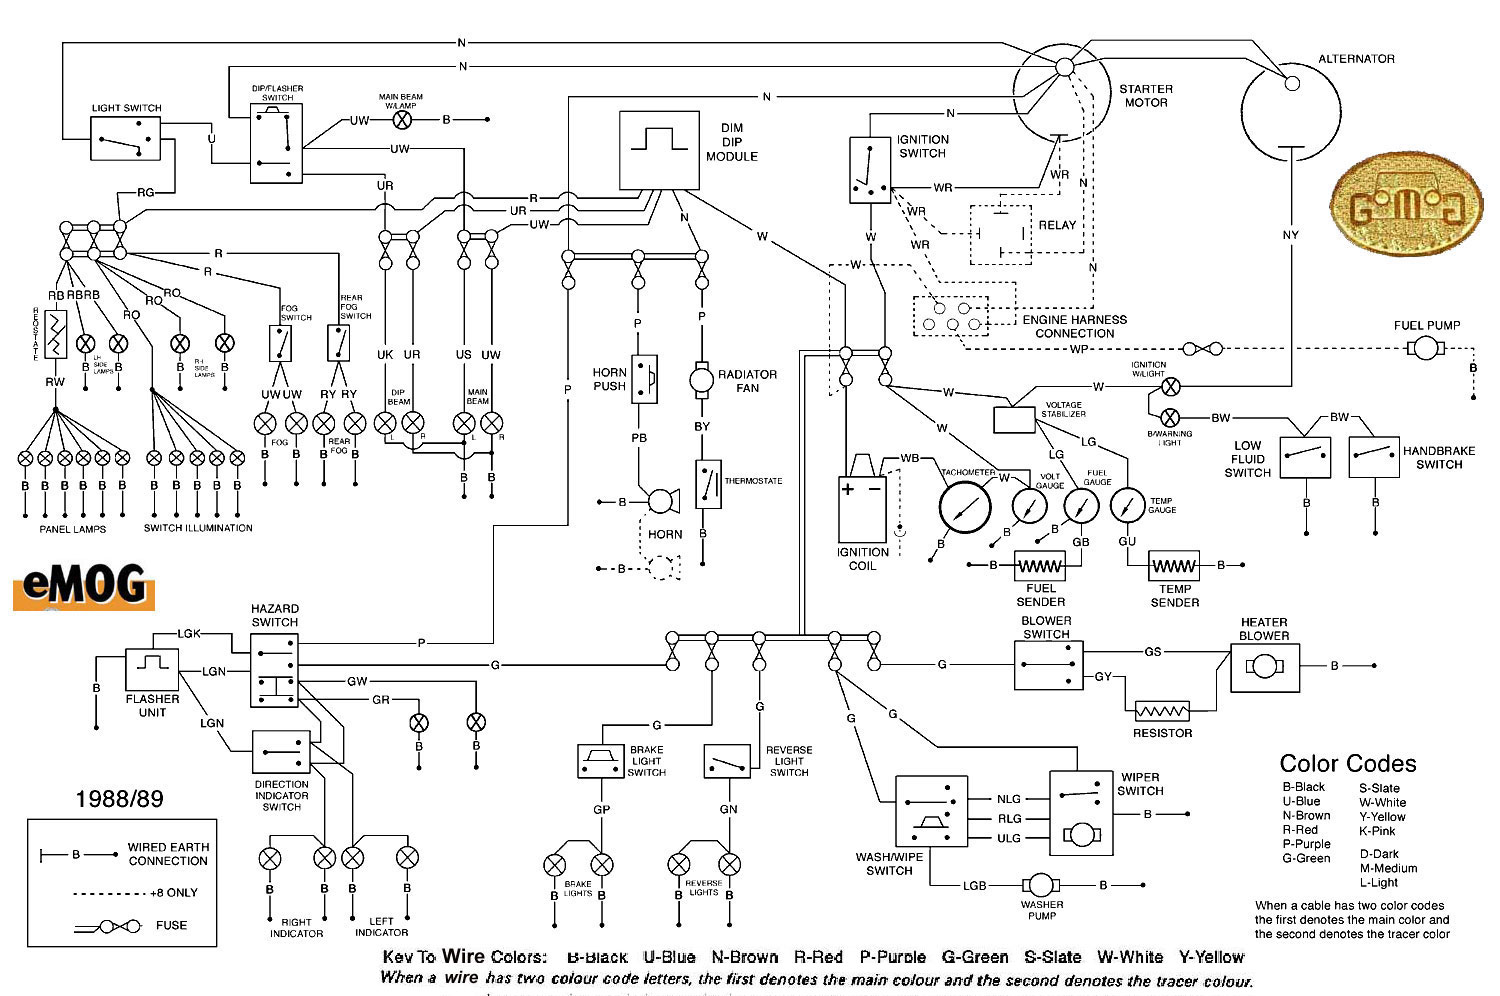 Morgan electrical 2004 mustang fuse panel diagram 